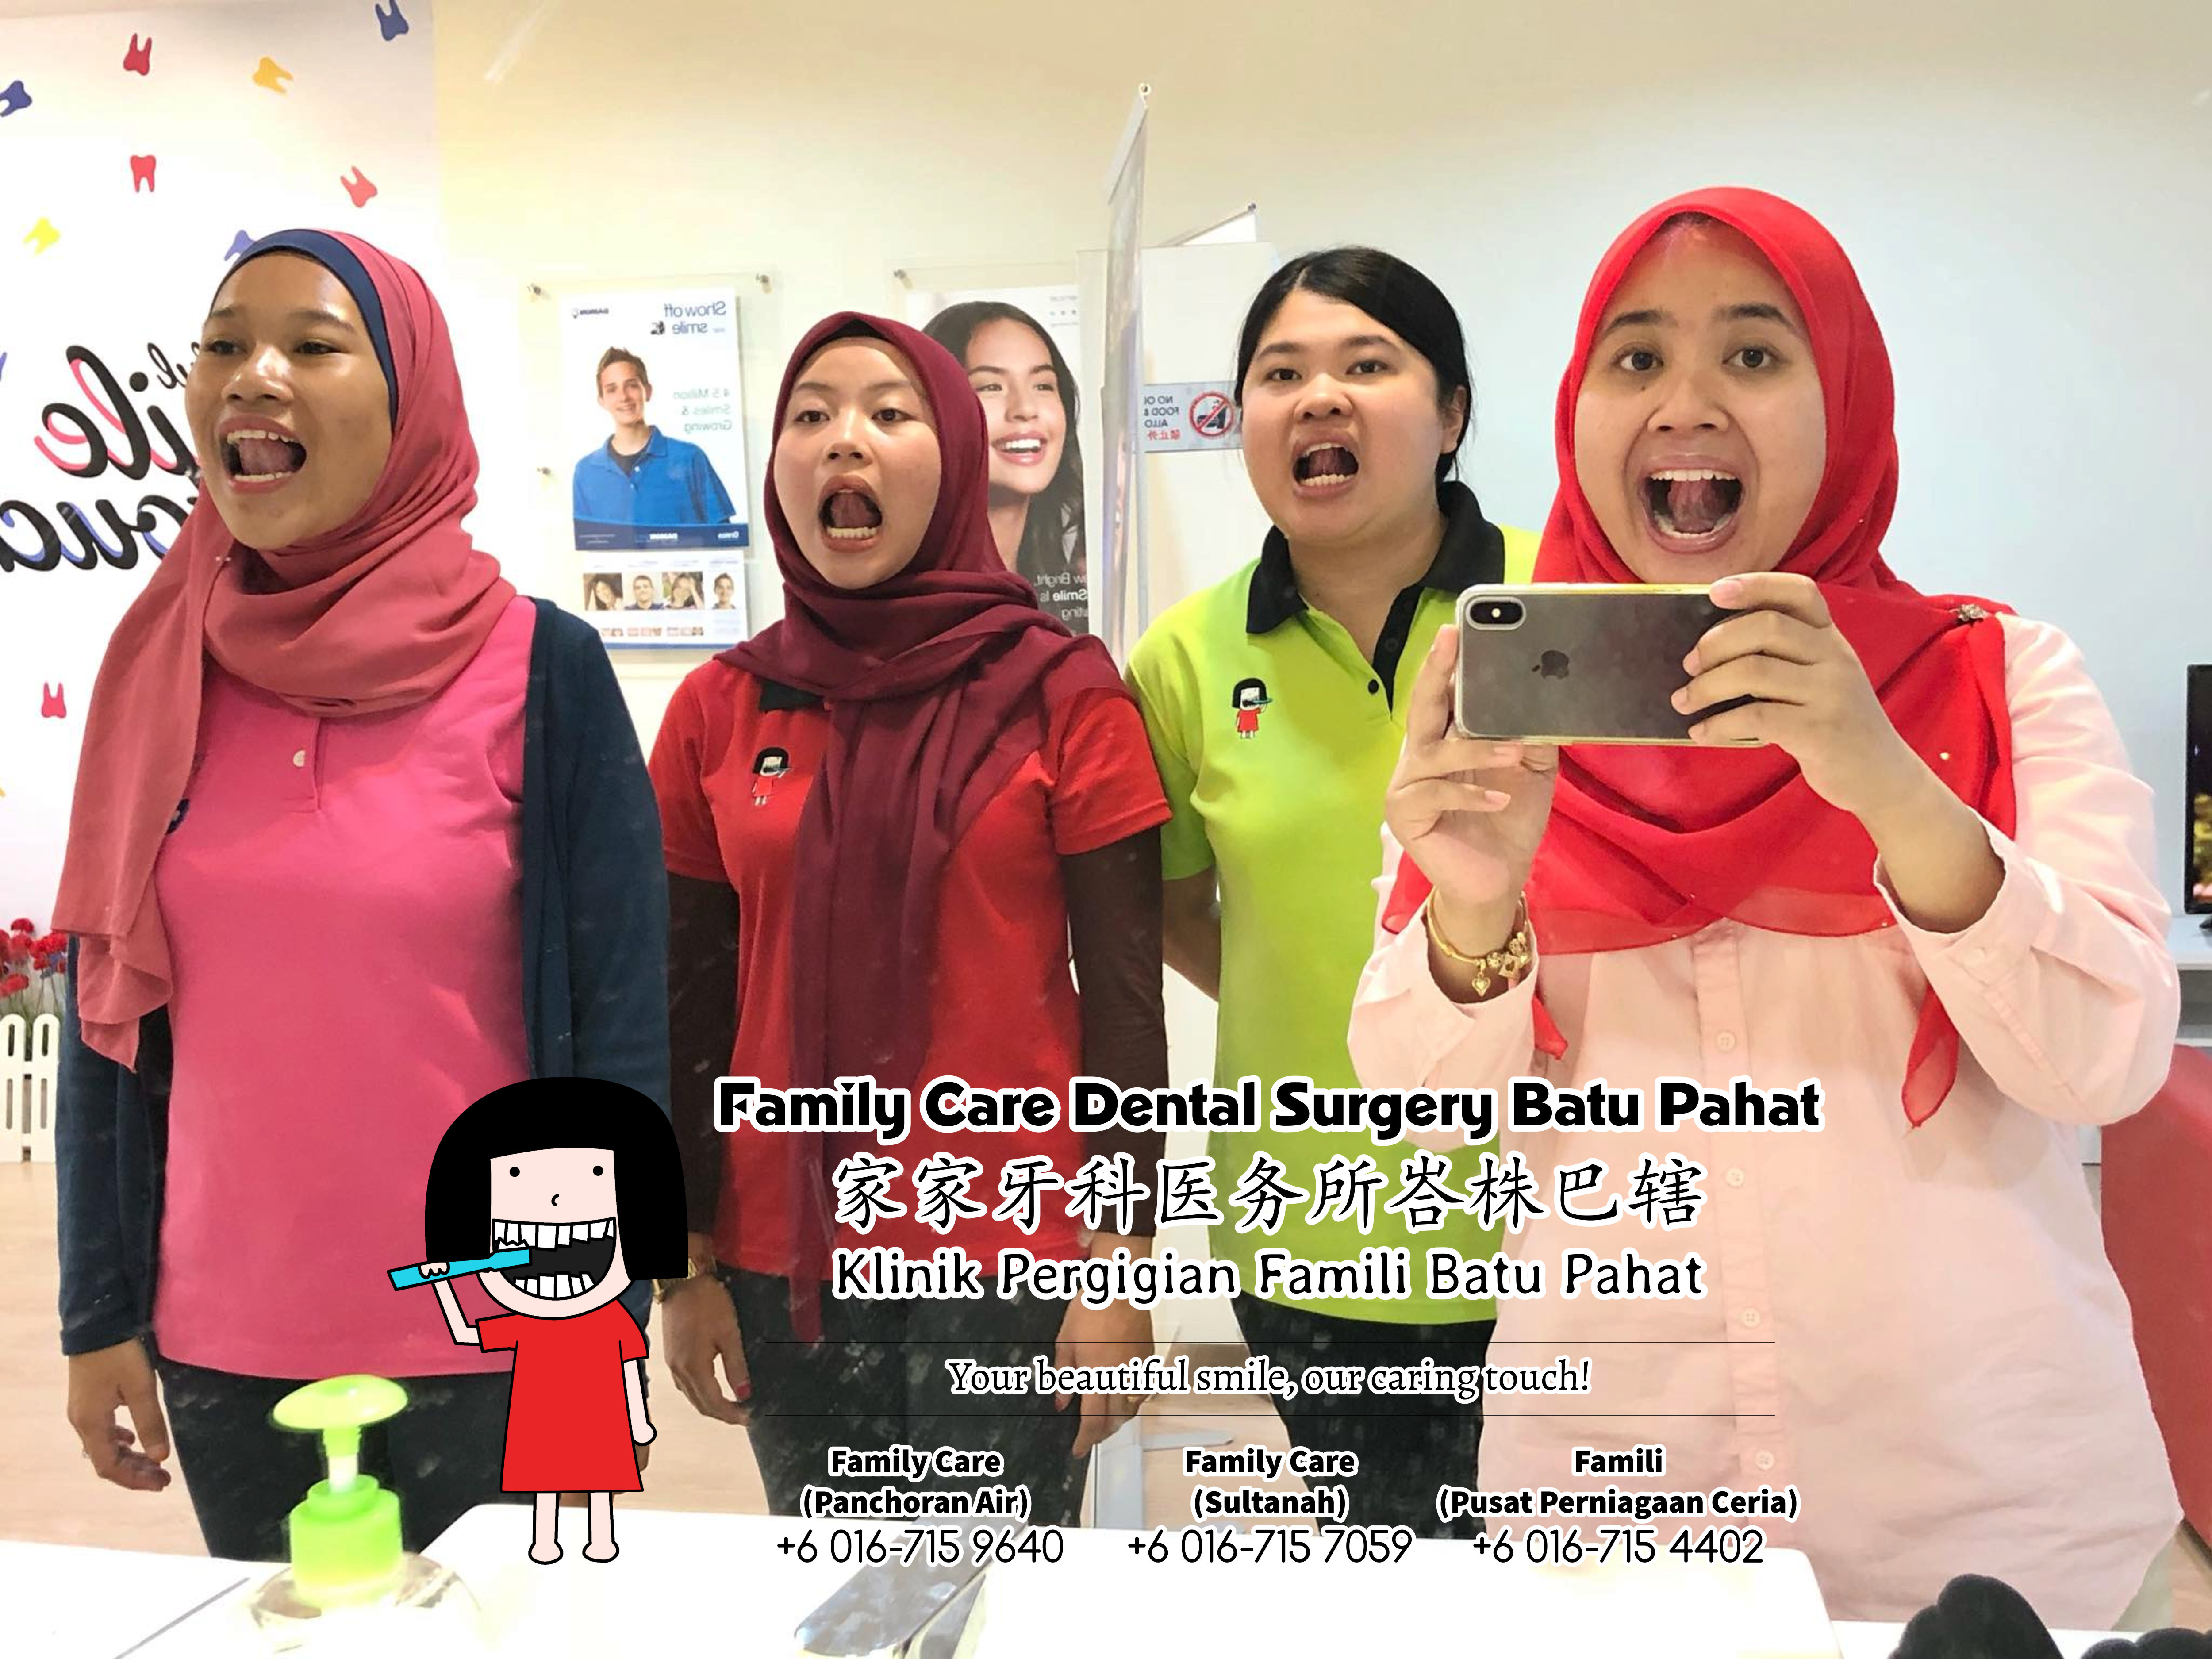 Klinik Pergigian Famili Batu Pahat Johor Malaysia Batu Pahat Doktor Pergigian Kanak-kanak Klinik Pergigian Perkhidmatan Komuniti Ke Sekolah Tinggi Cina Batu Pahat Memeriksa Gigi Pelajar A04-03